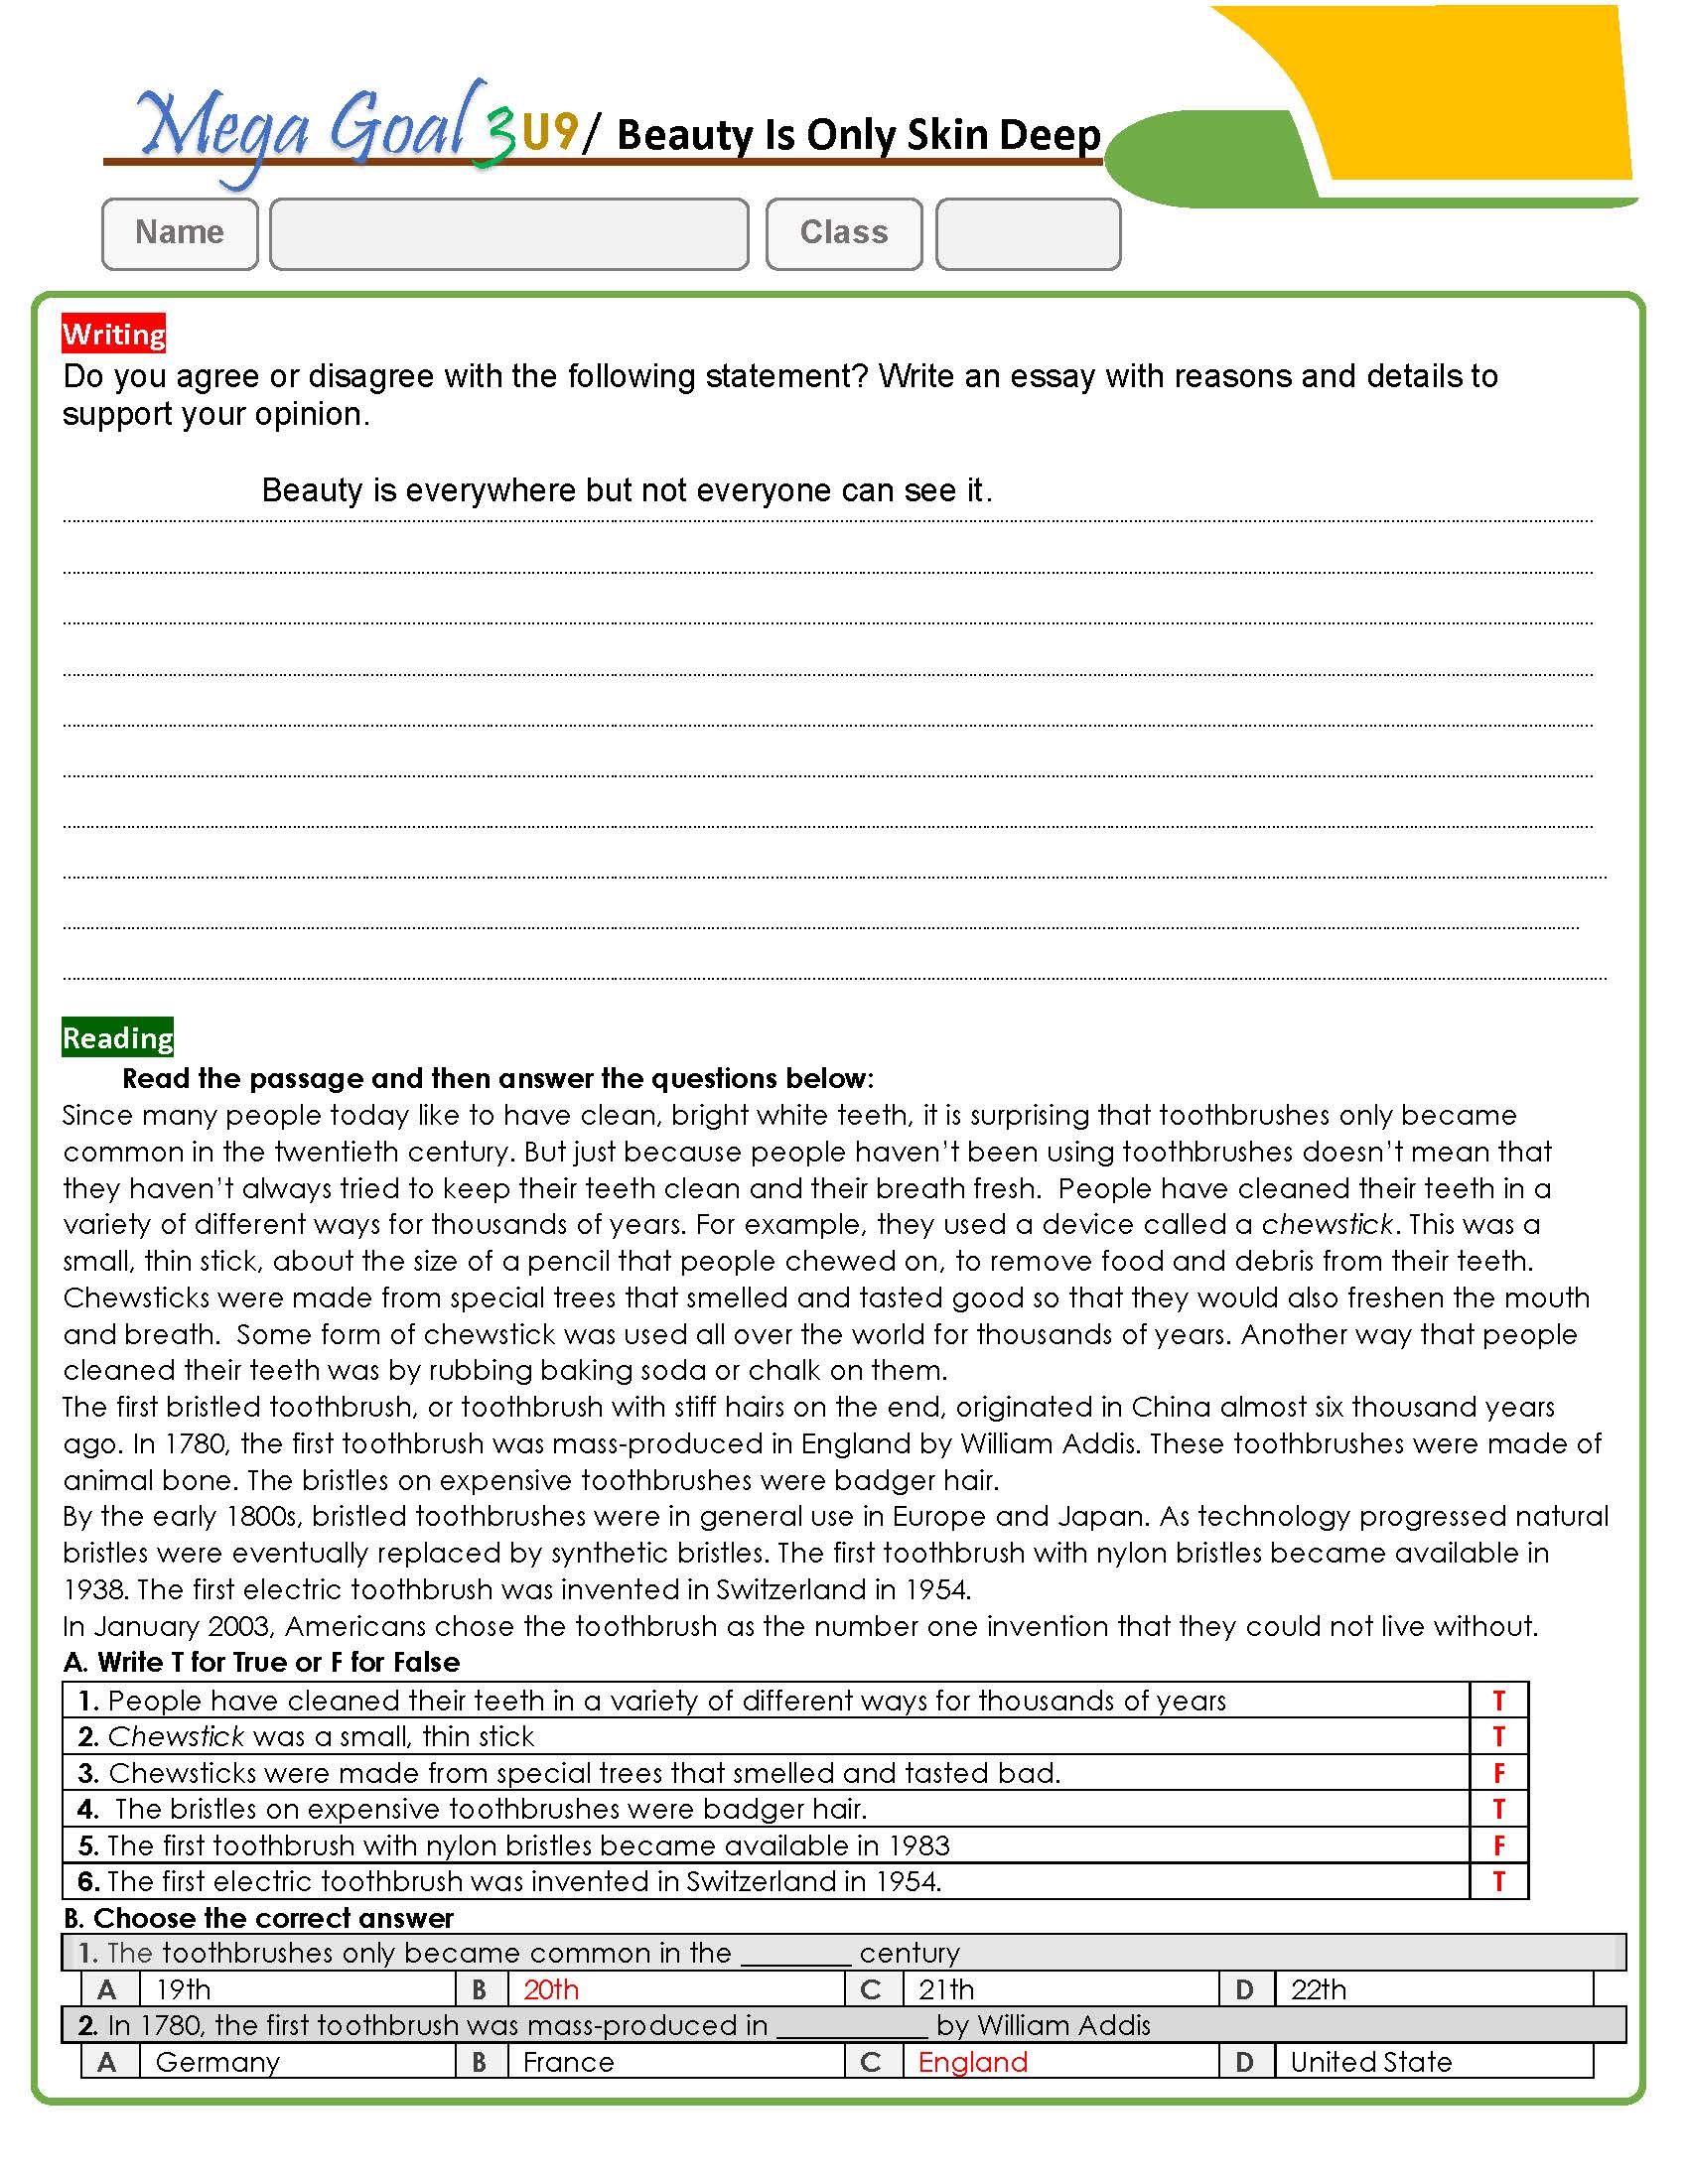 أوراق عمل منهج Mega Goal3-English 3.3 الفصل الدراسي الثالث 1445 - أسئلة واجابة ( word - pdf )